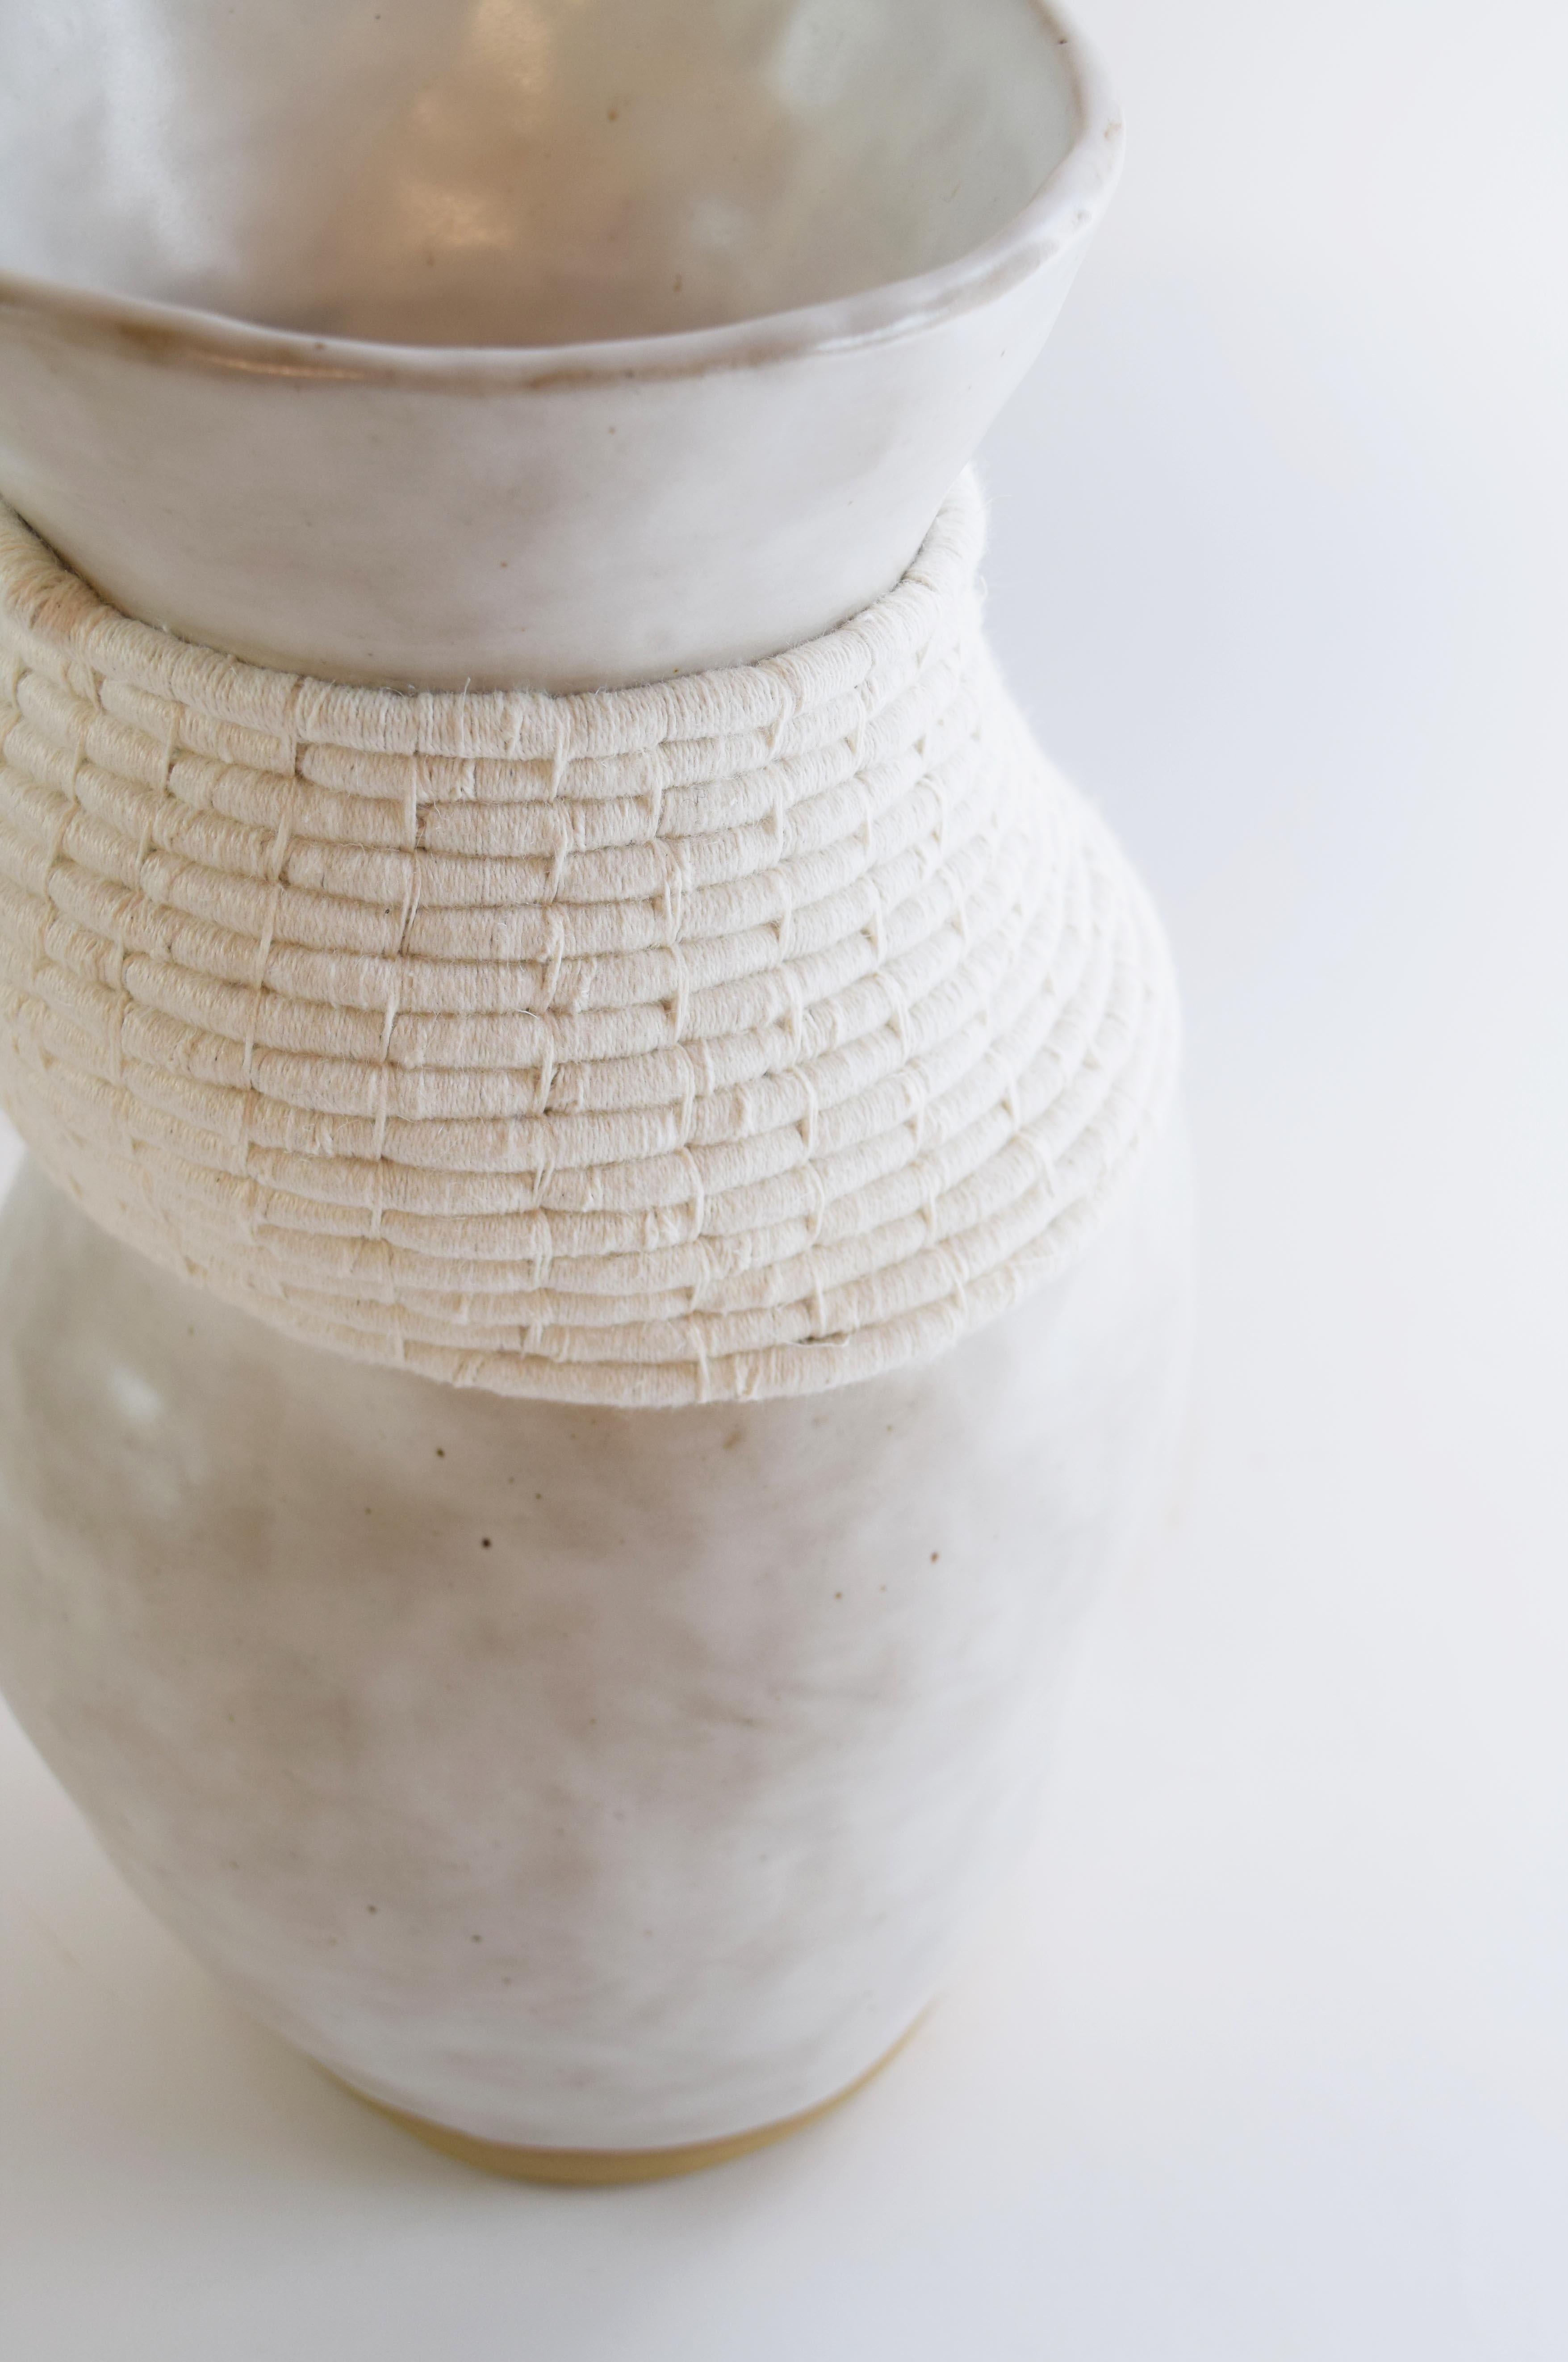 Organic Modern One of a Kind Asymmetrical Ceramic Vase #775, White Glaze, Woven White Cotton